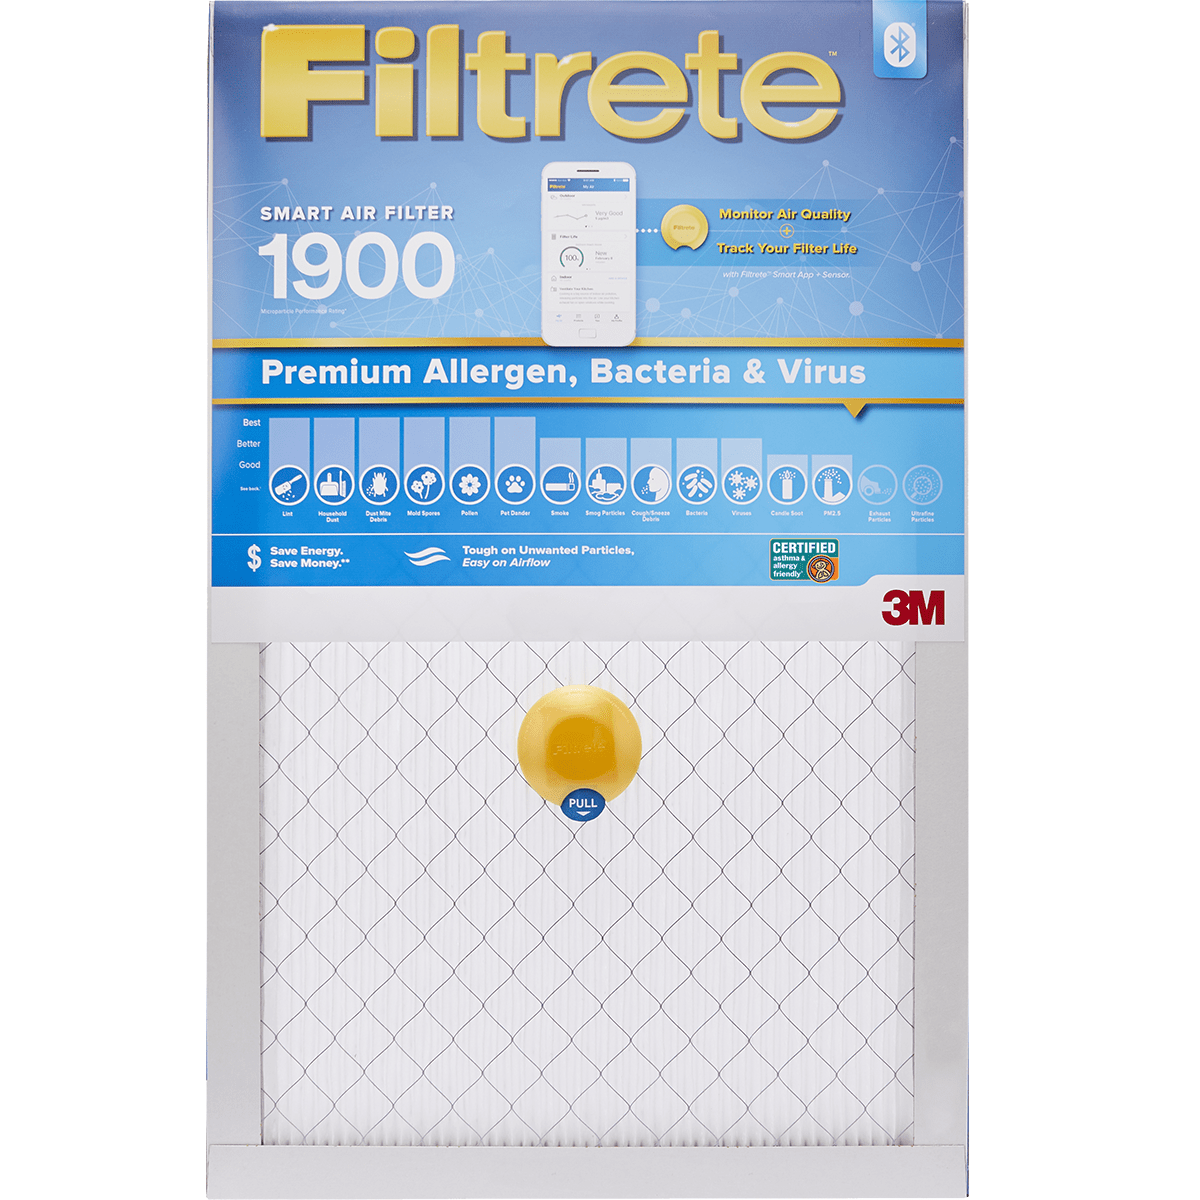 Image of 3m Filtrete 1900 Mpr Premium Allergen, Bacteria & Virus Smart Air